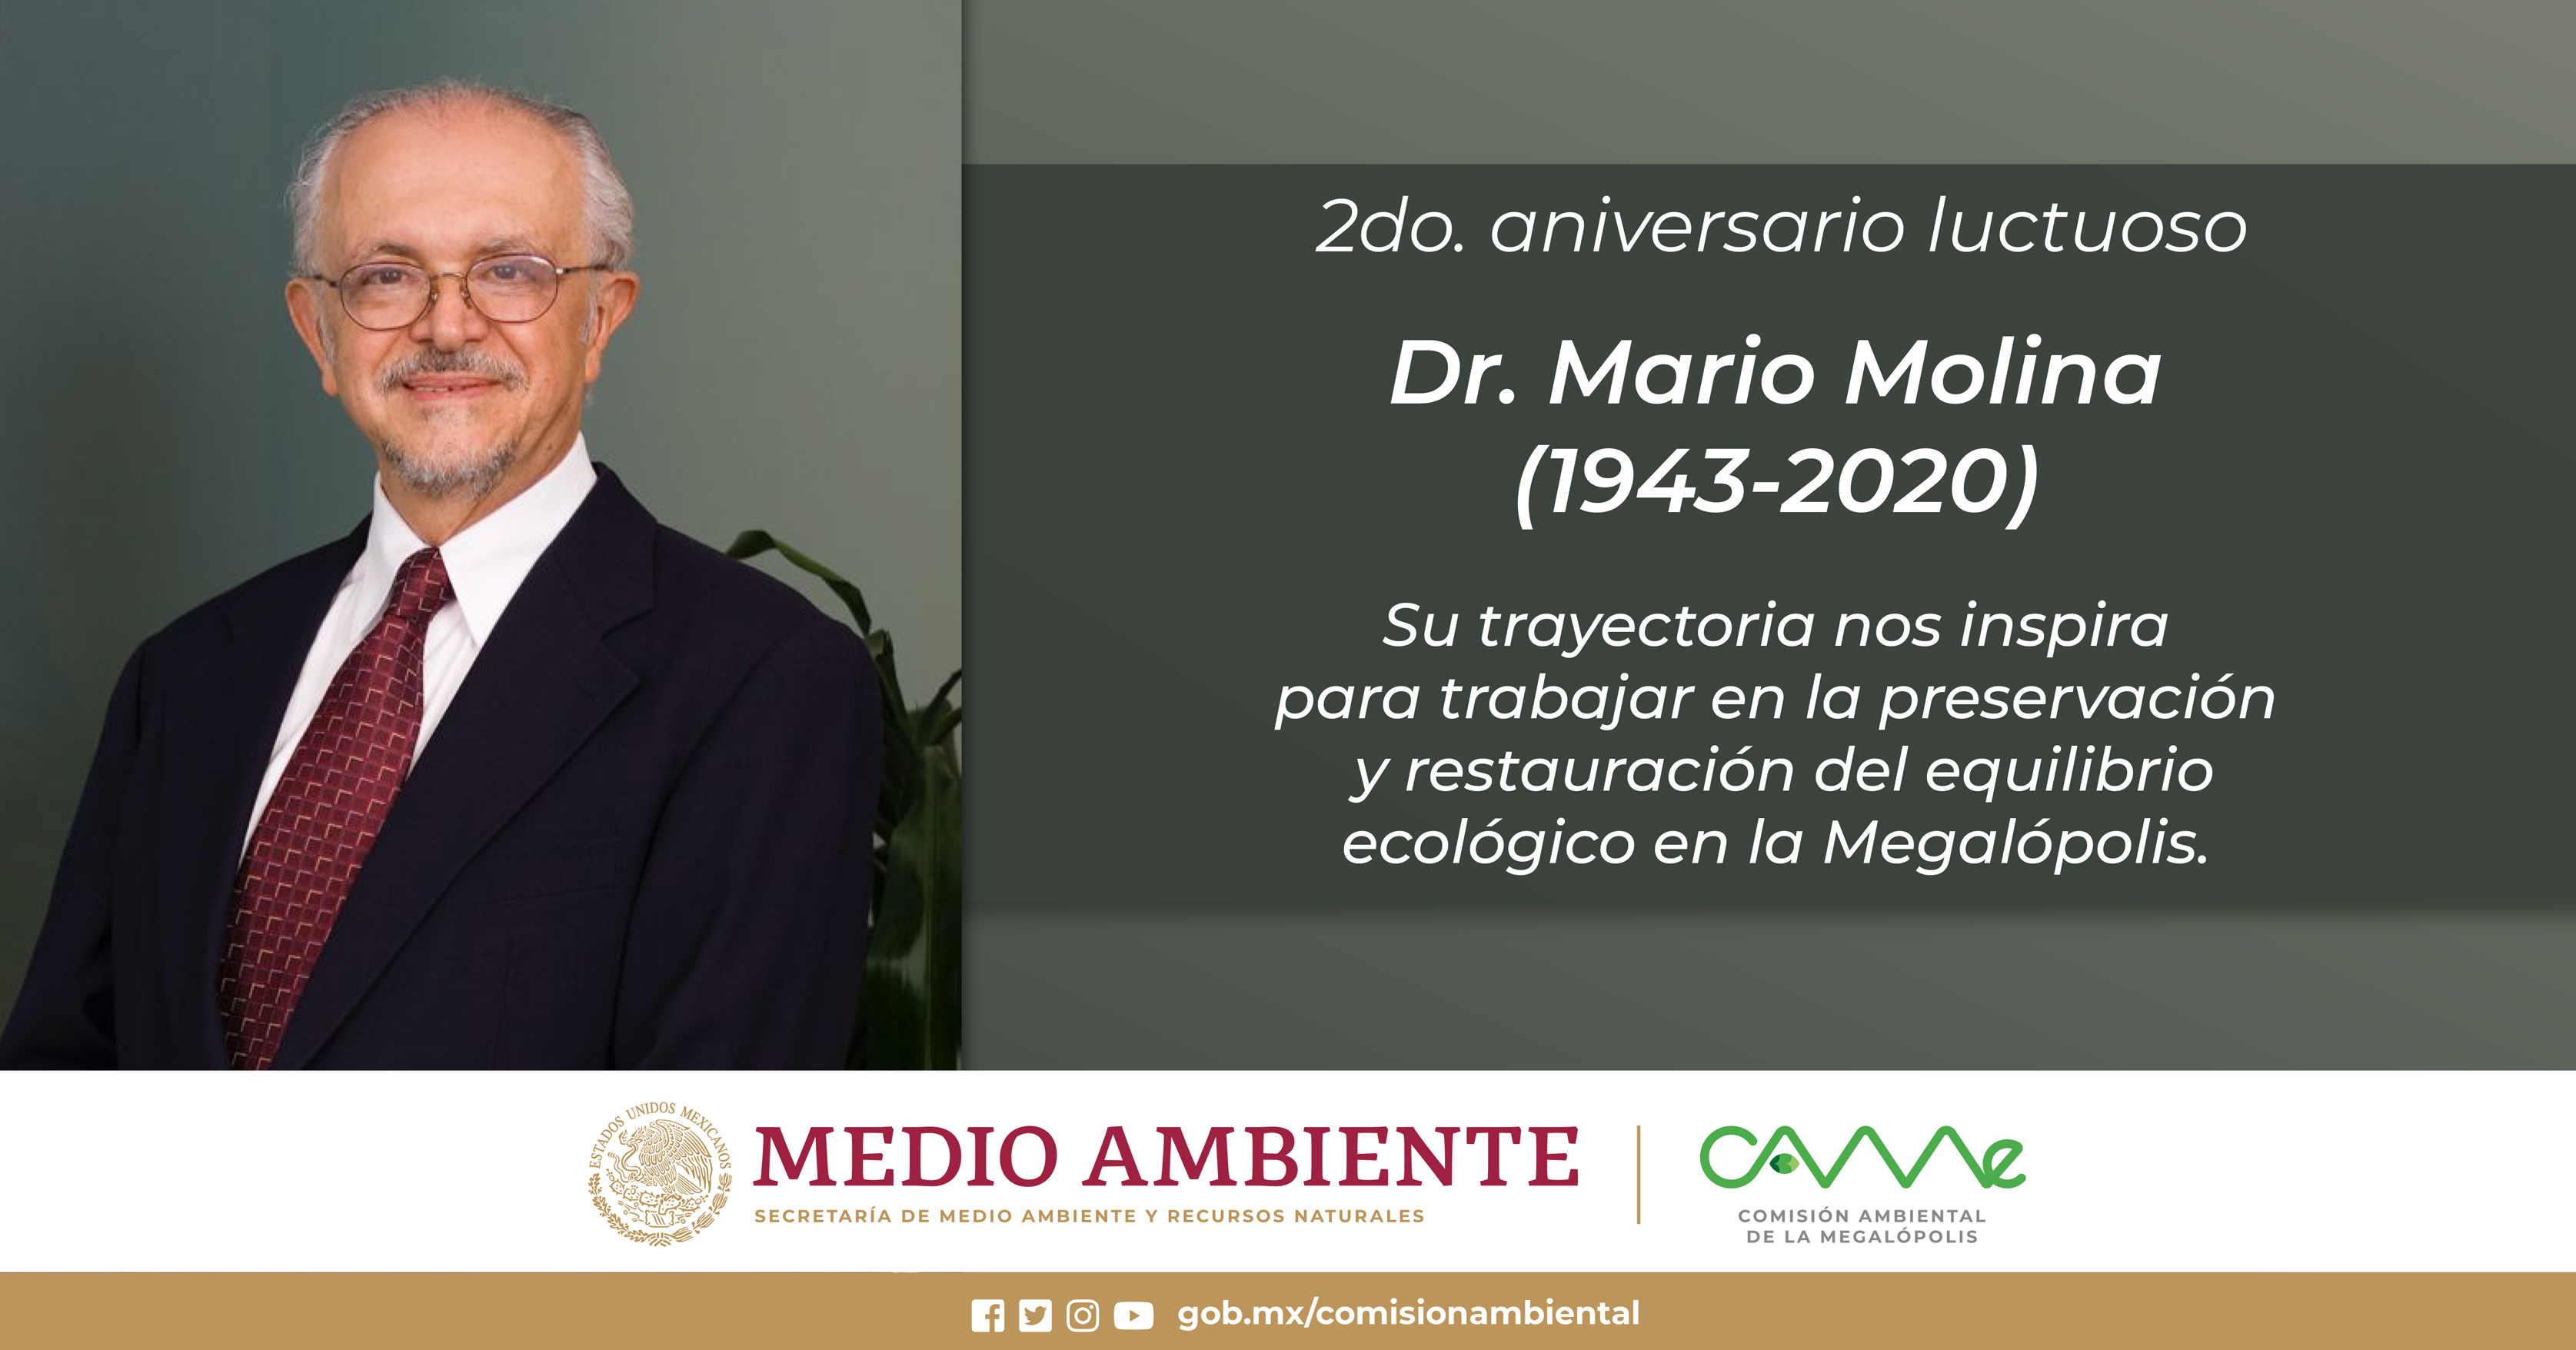 2do. Aniversario luctuoso 
Dr. Mario Molina